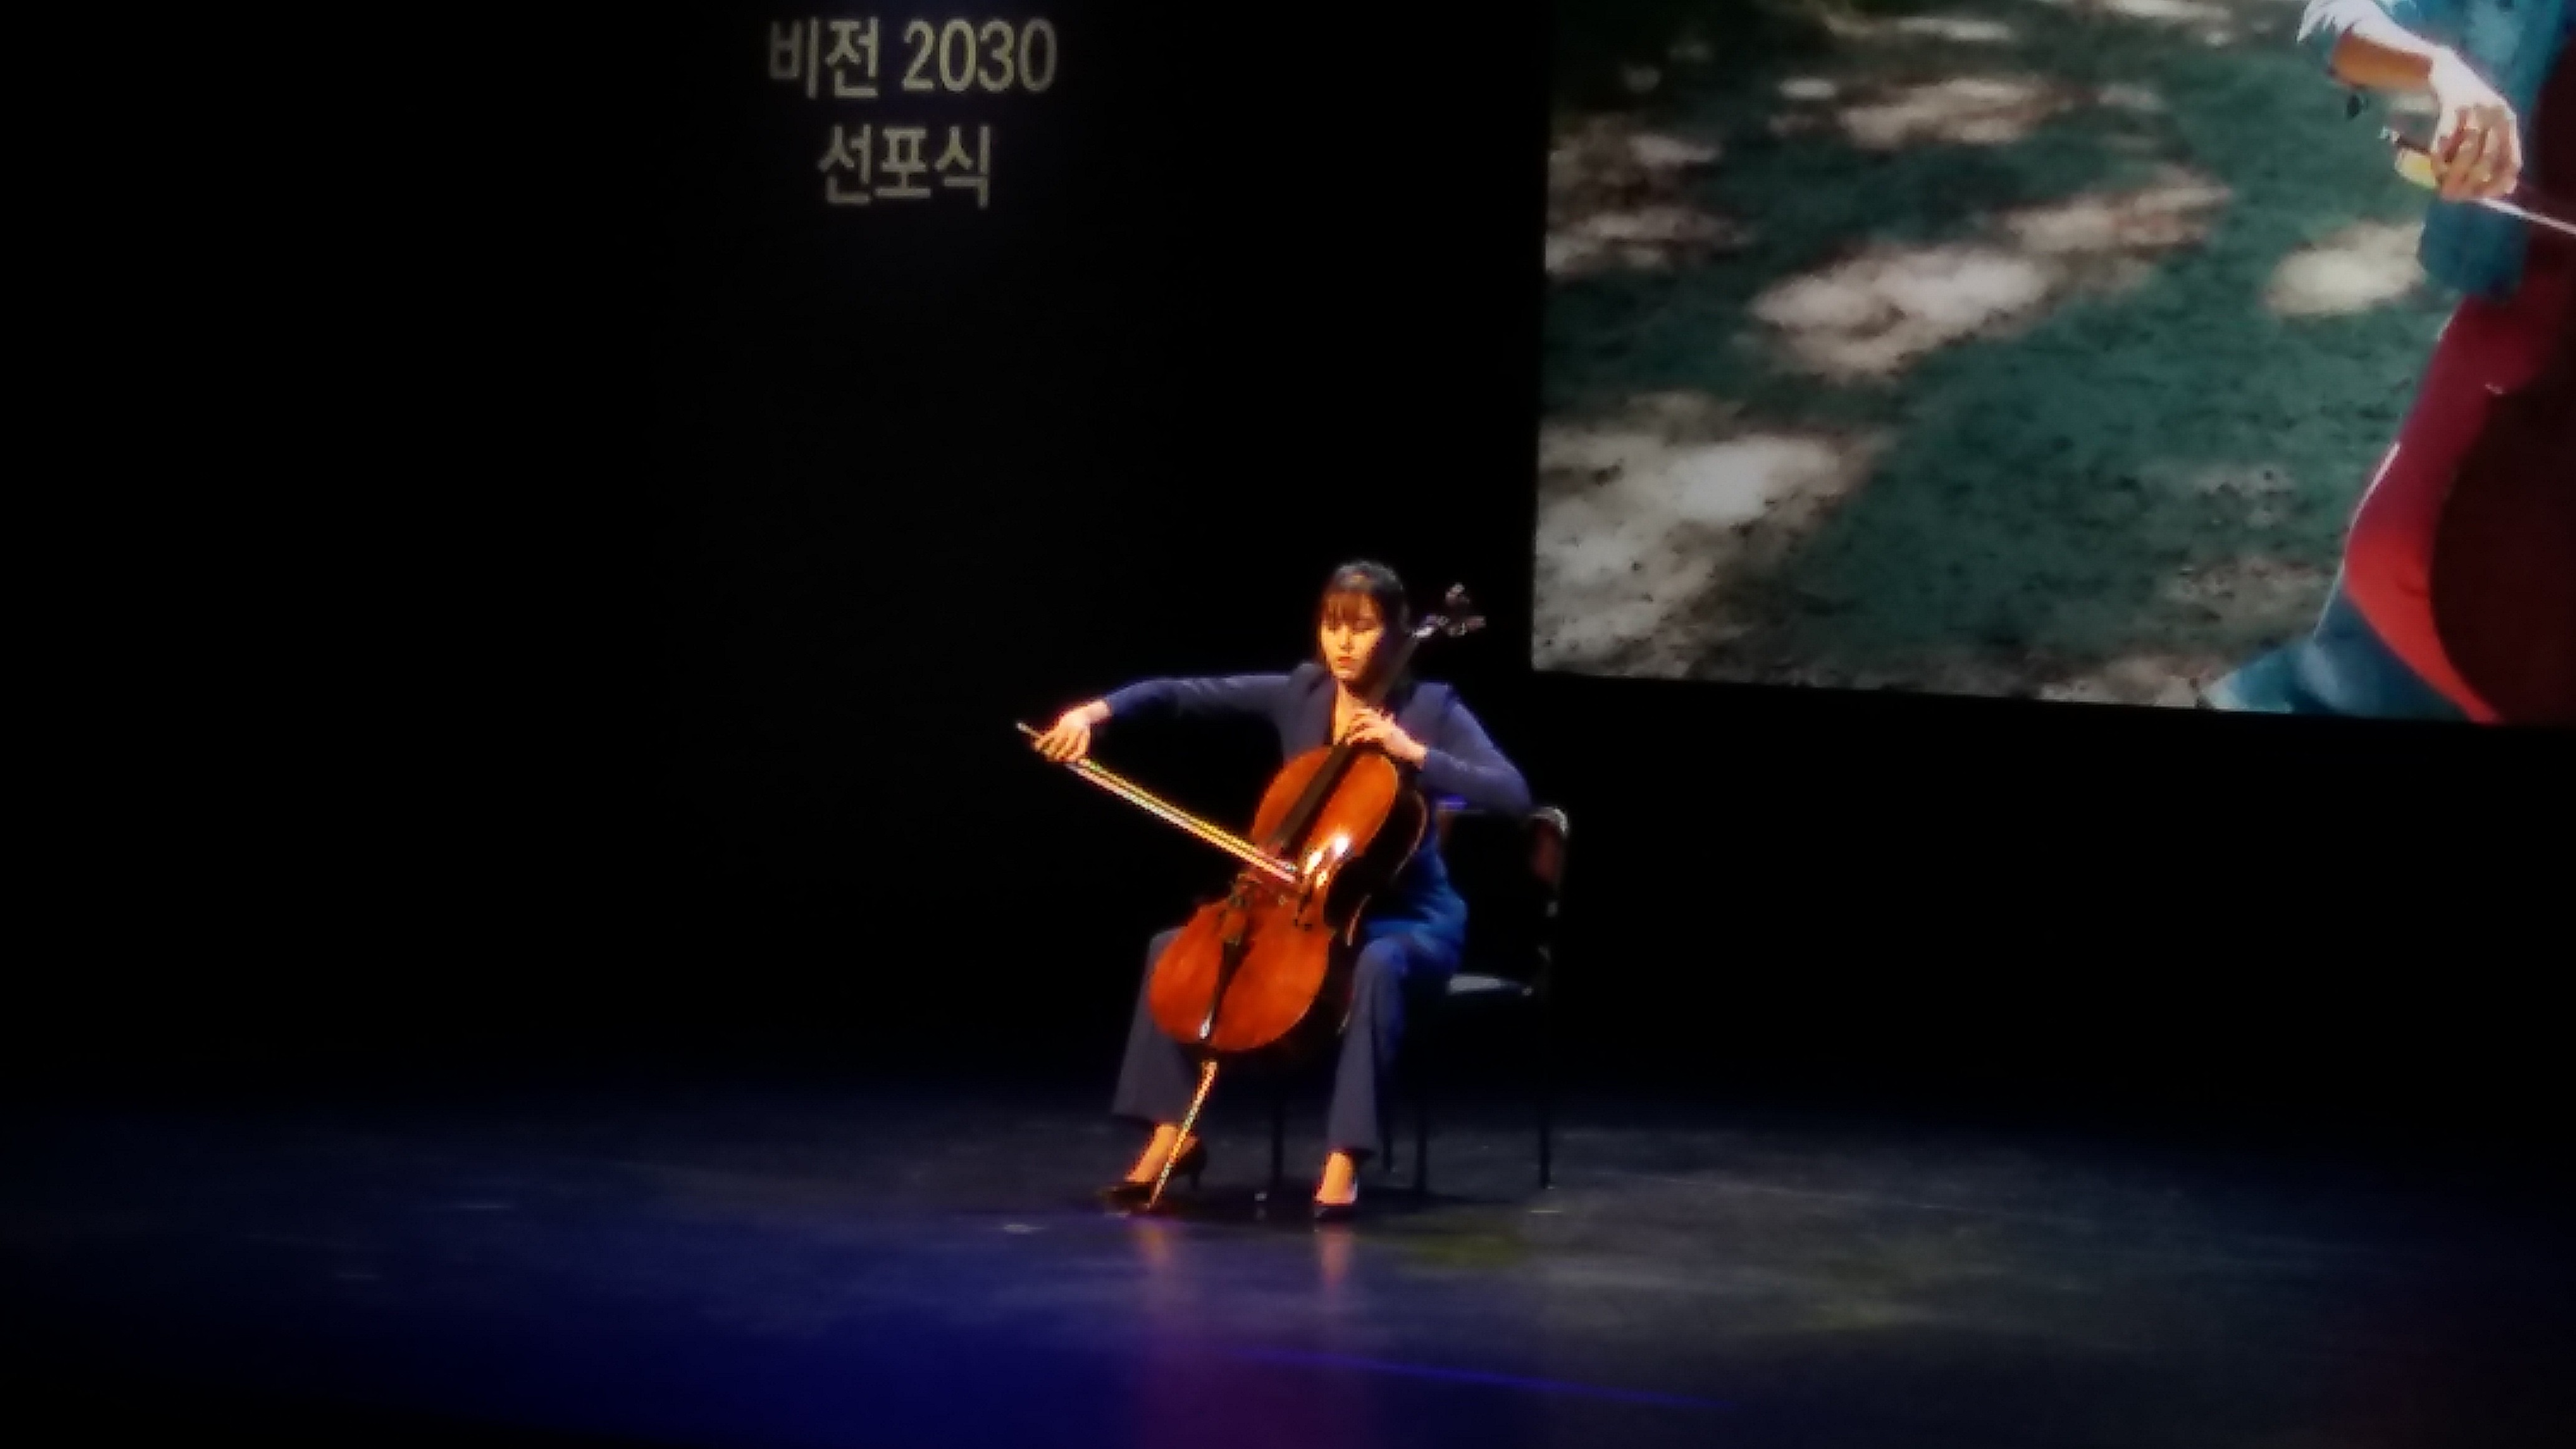 한국문화예술위원회 아르코 비전 2030 발표...블랙리스트 추락 신뢰 회복 목표